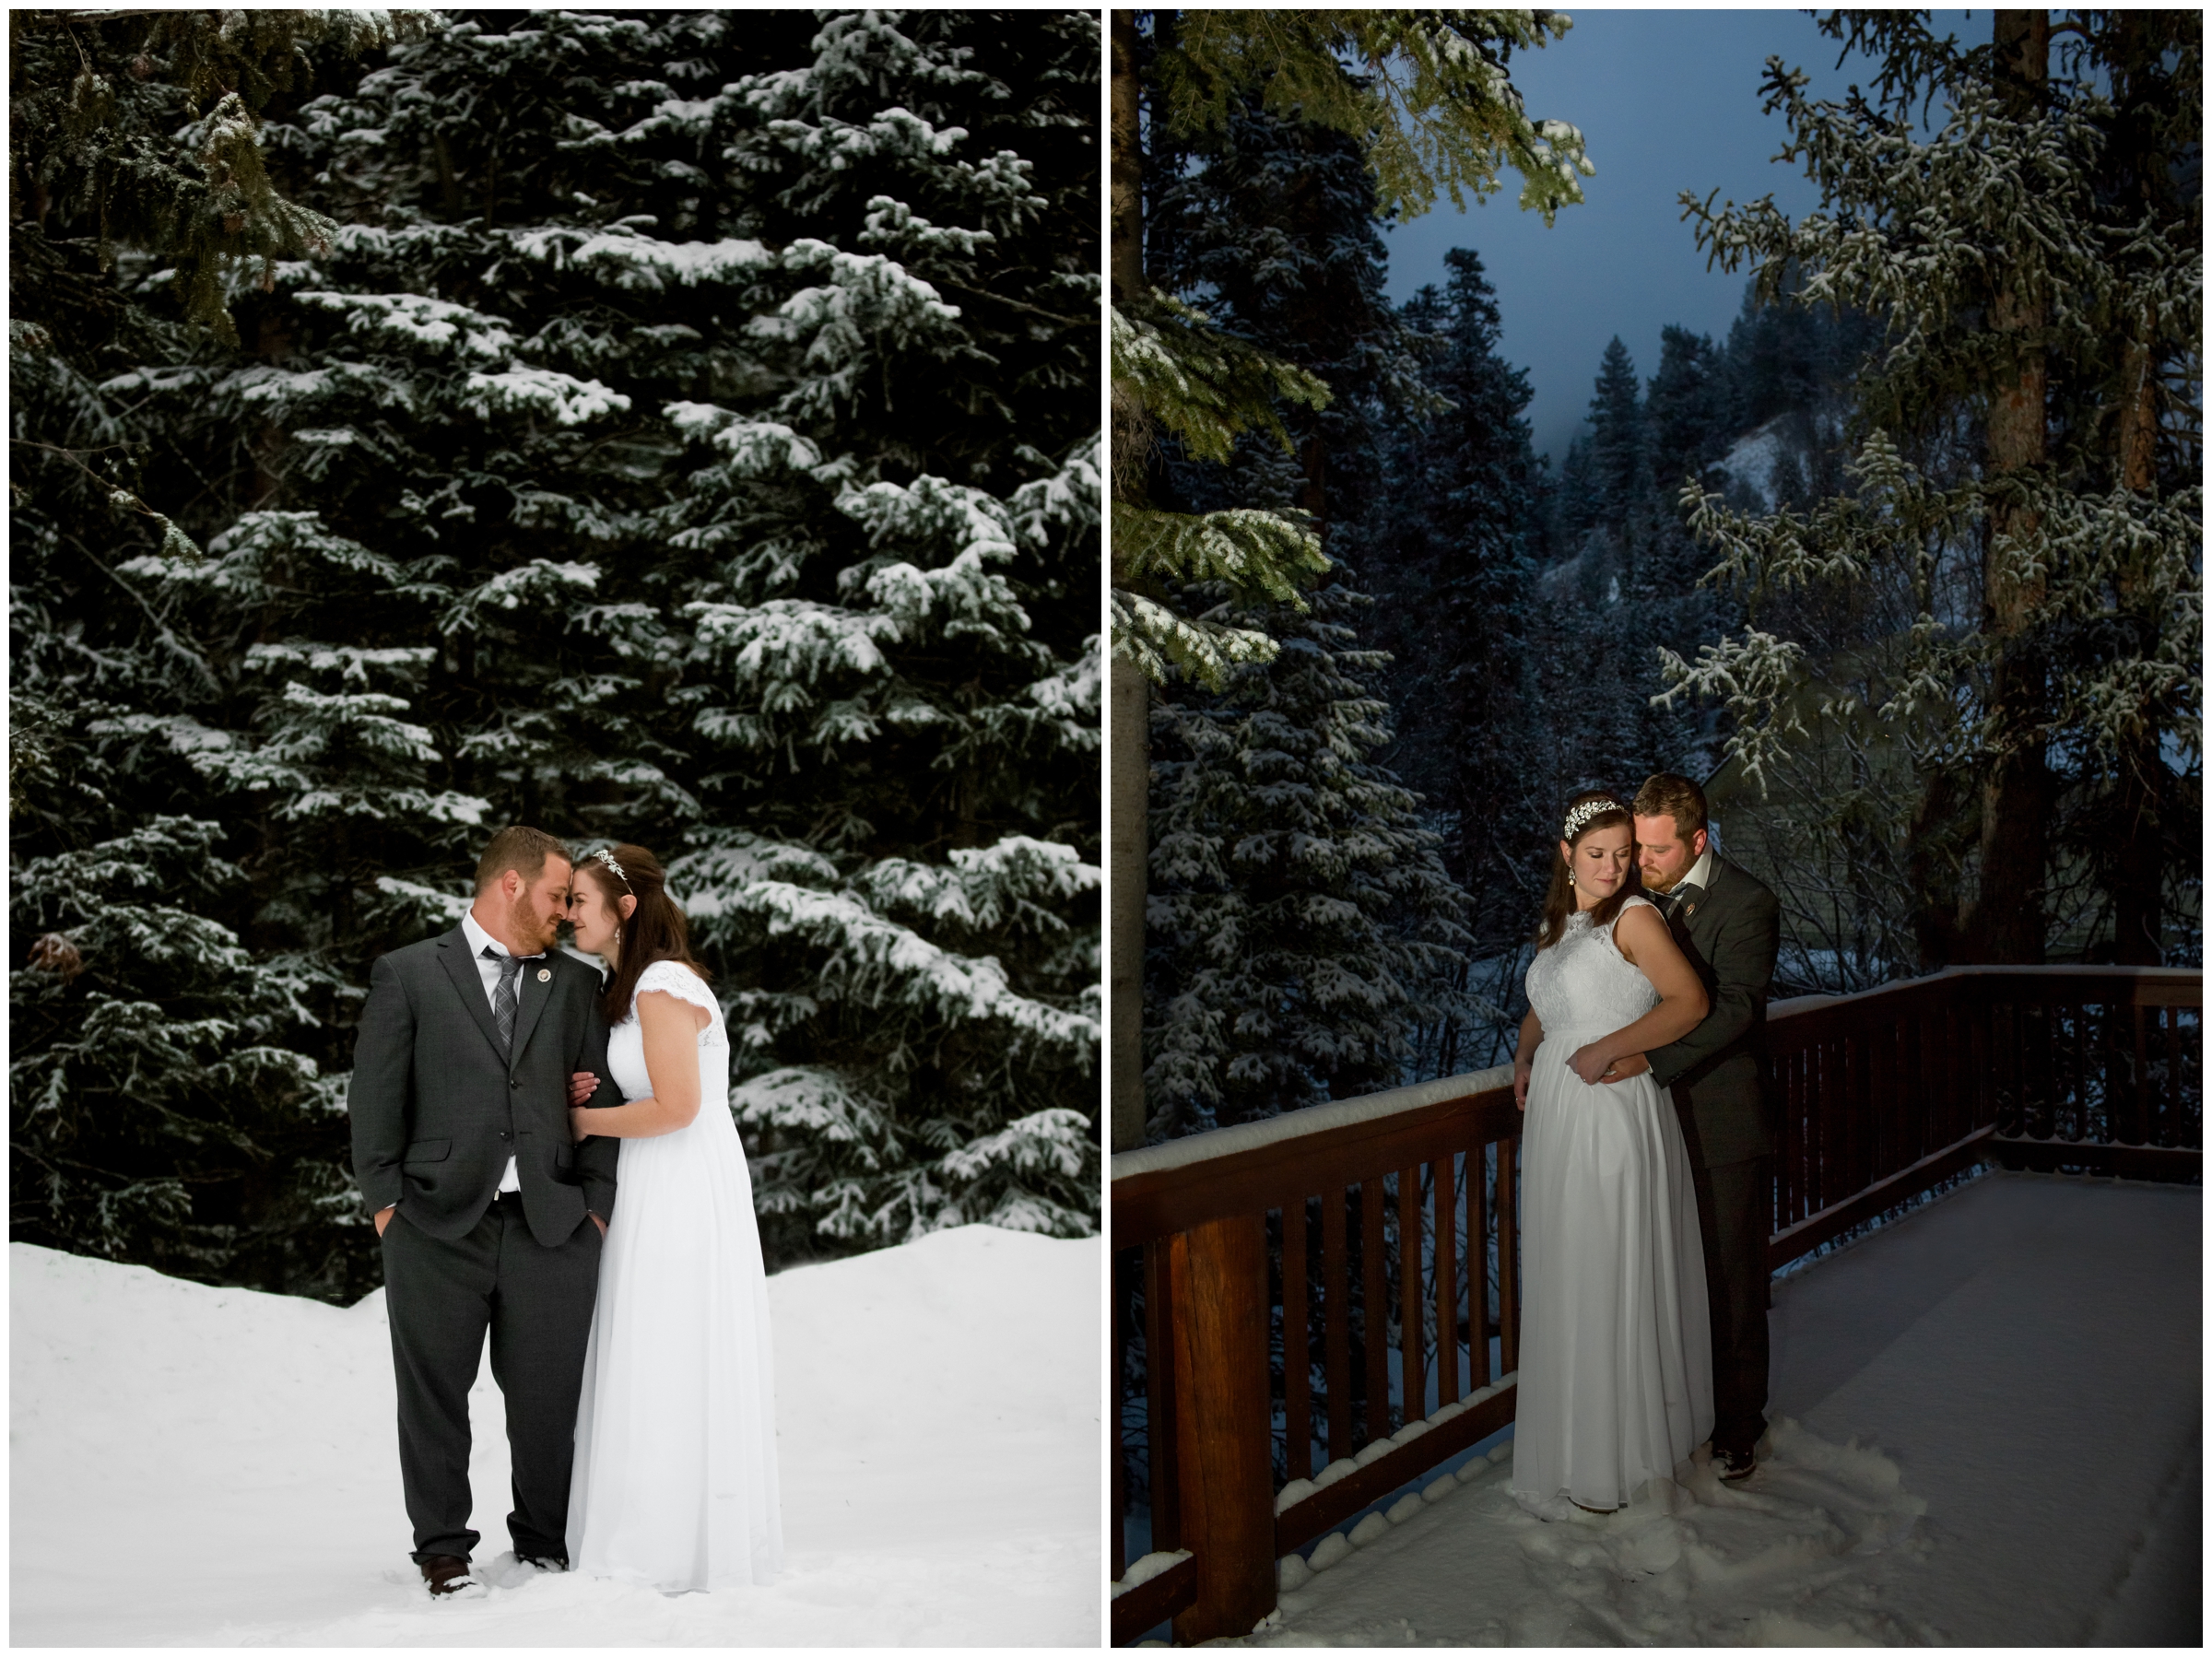 nighttime wedding photos in the snowy Colorado mountains 